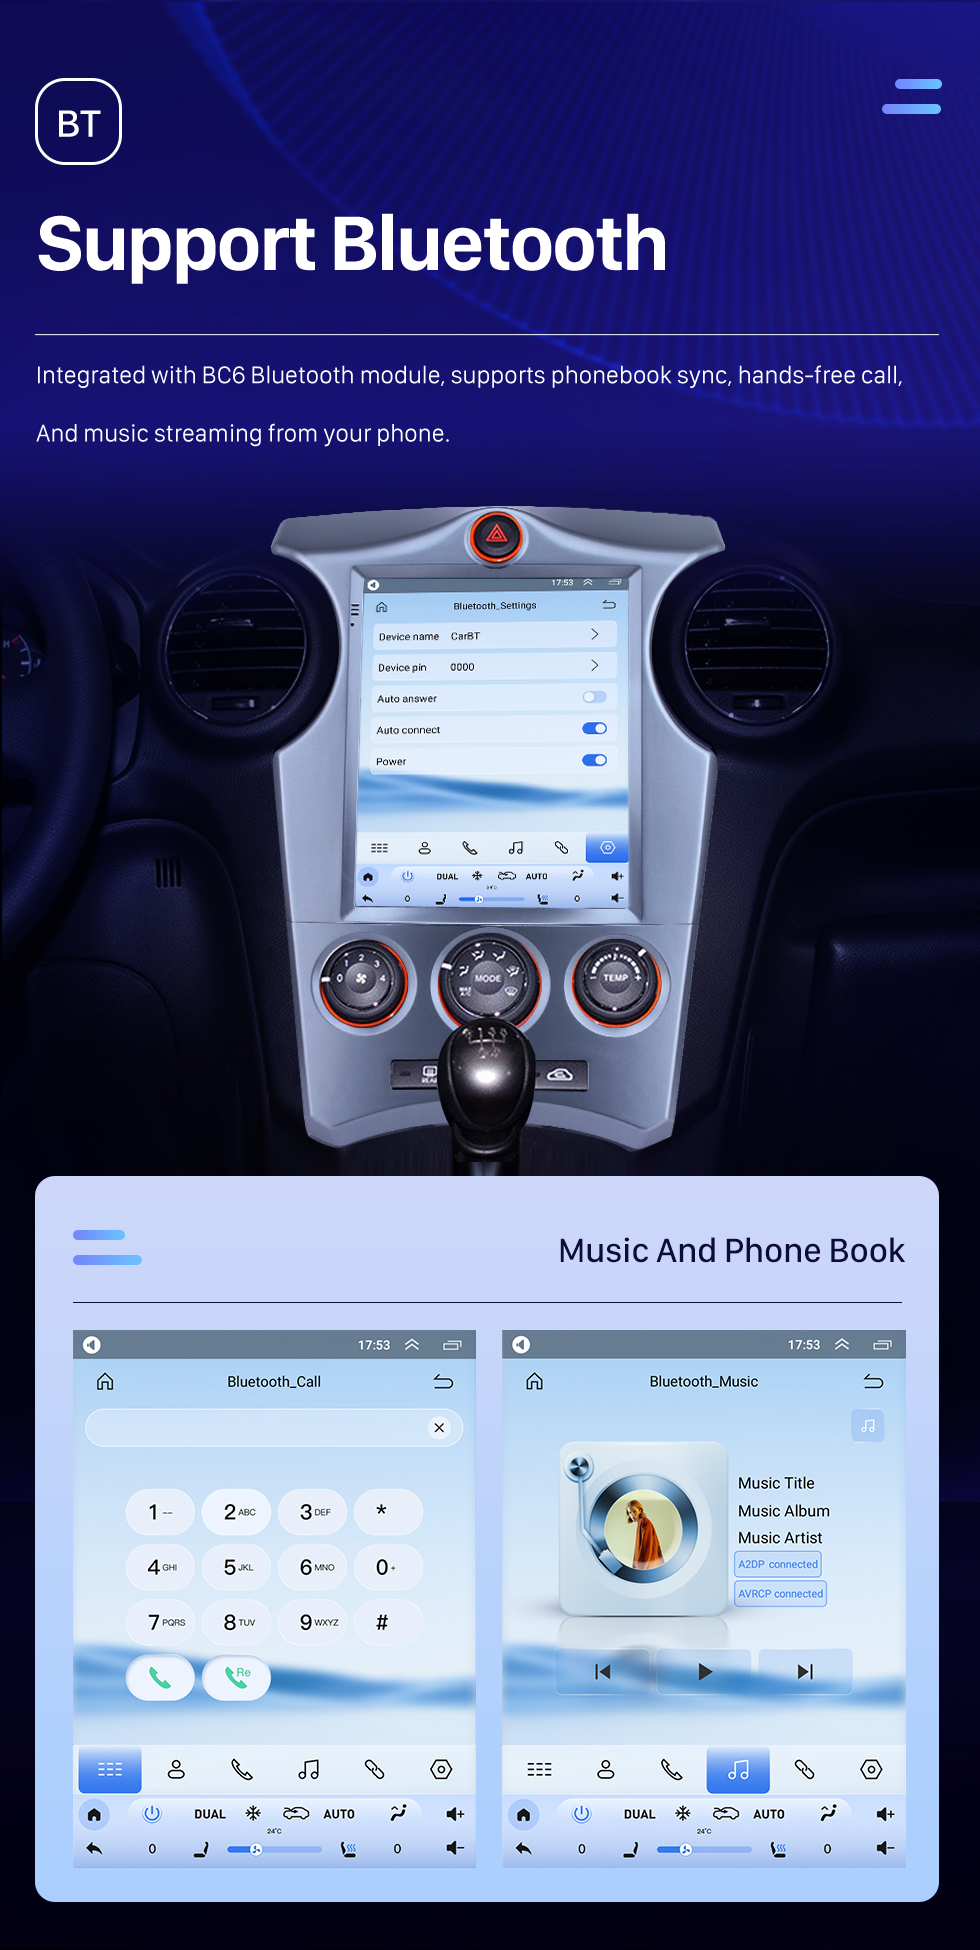 Seicane 2007-2012 Kia Carens Manual A/C 9,7 polegadas Android 10.0 GPS Navegação Rádio com tela sensível ao toque Bluetooth USB WIFI suporte Carplay Mirror Link 4G